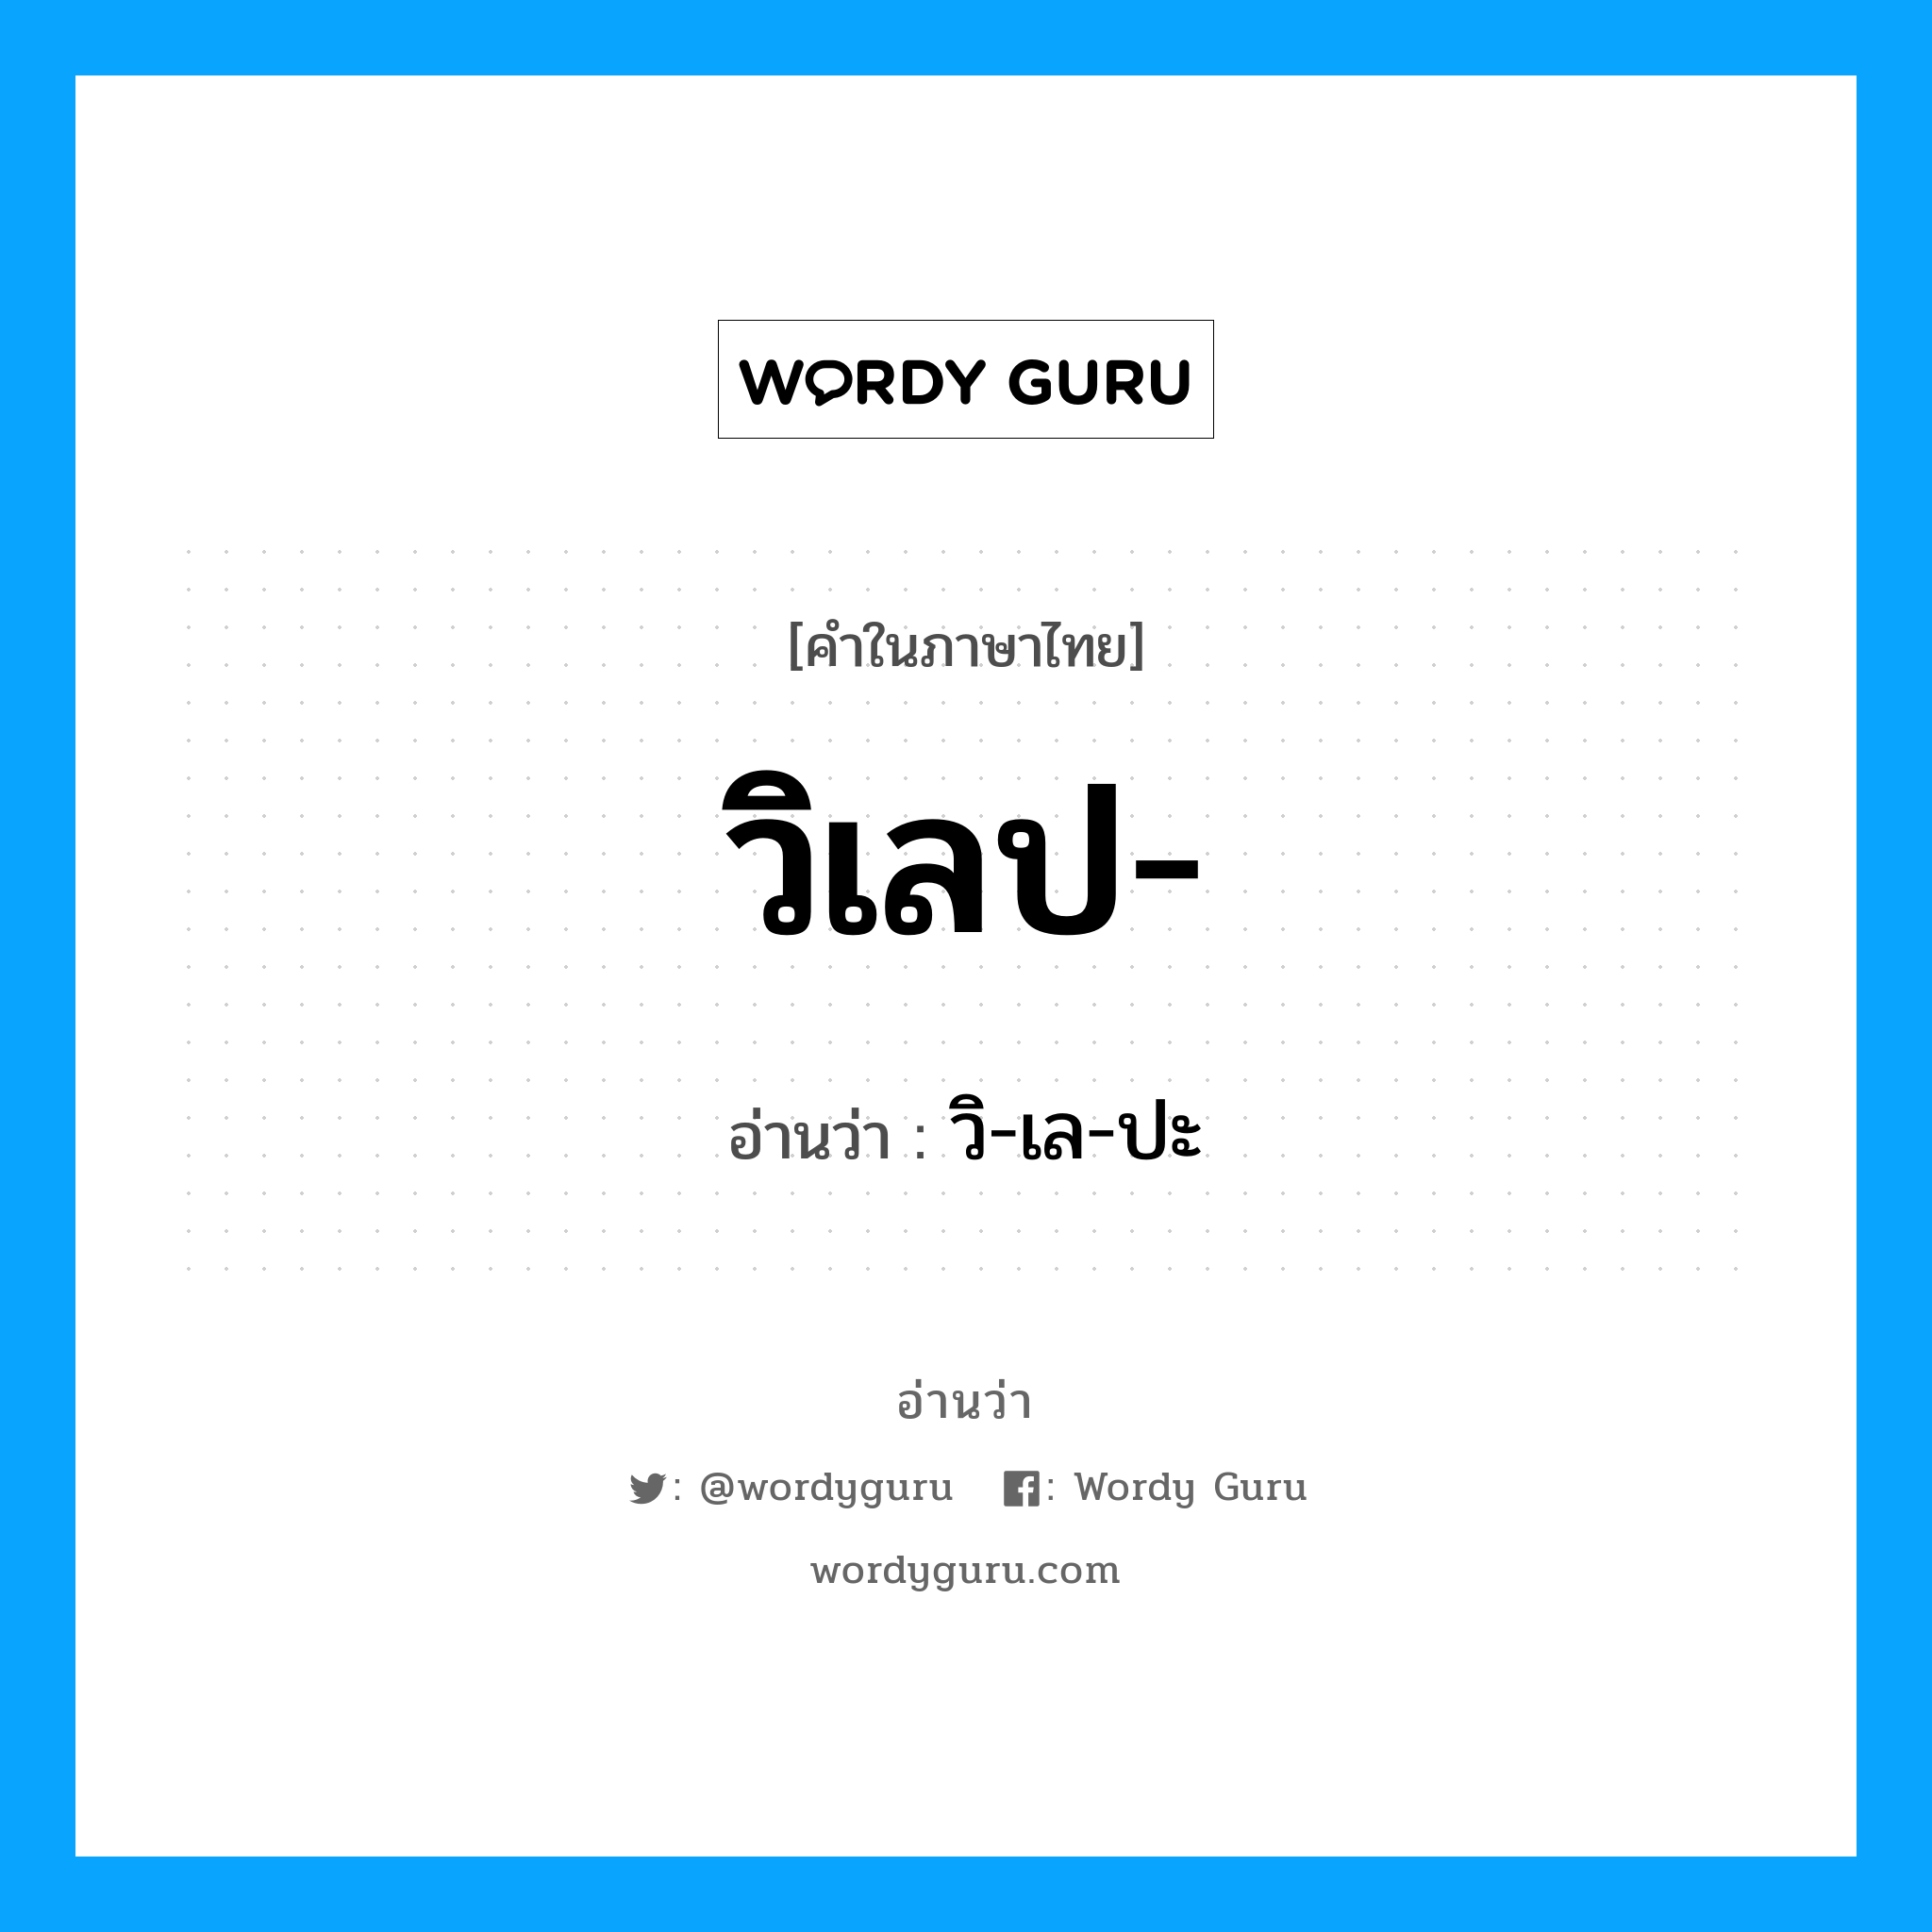 วิ-เล-ปะ เป็นคำอ่านของคำไหน?, คำในภาษาไทย วิ-เล-ปะ อ่านว่า วิเลป-